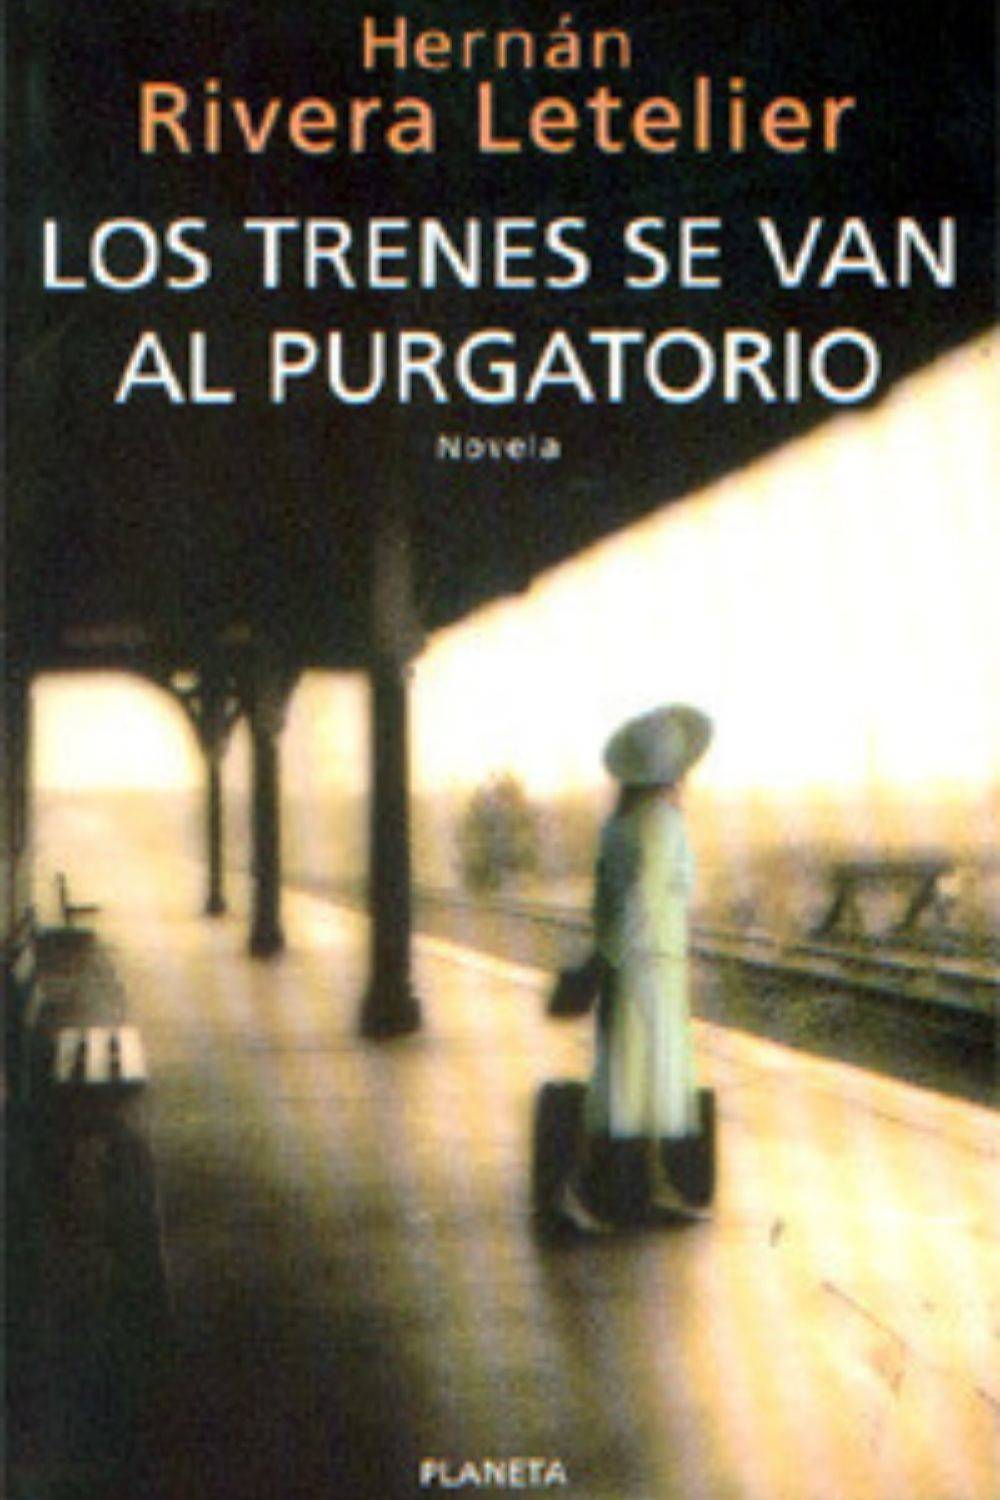 Los trenes van al purgatorio - Hernán Rivera Letelier